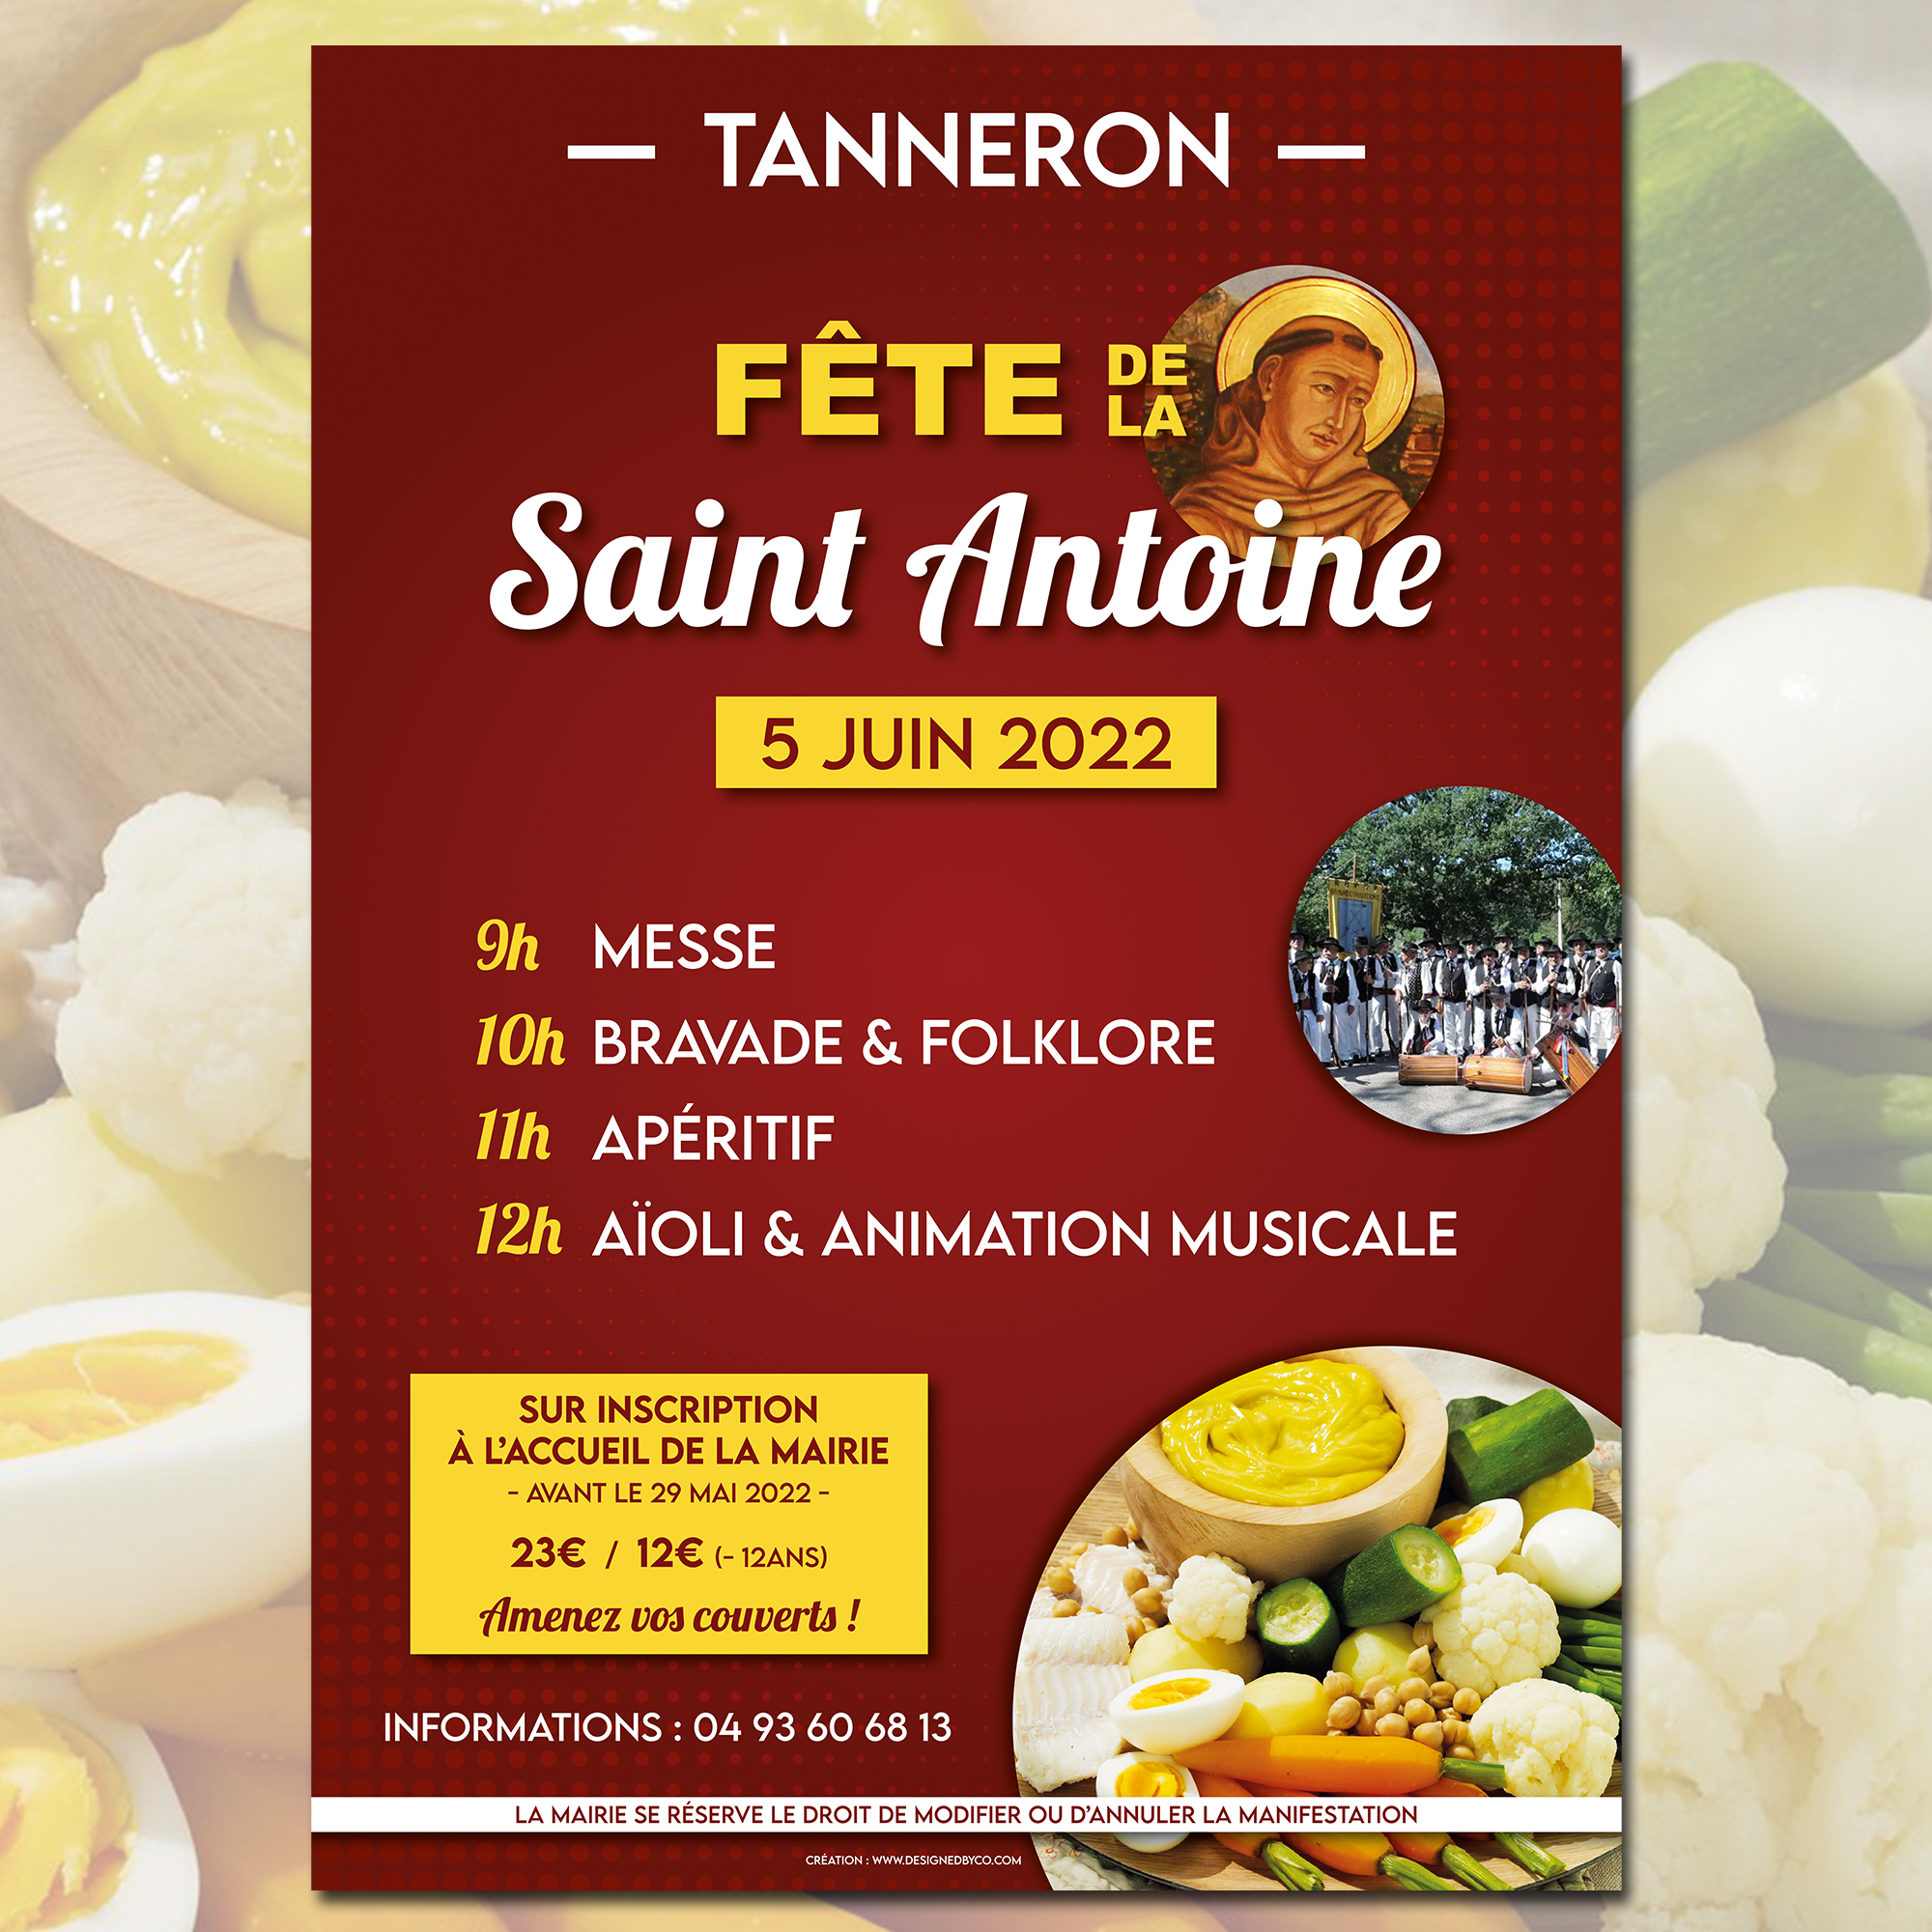 Fête de la Saint Antoine de Padoue 2022 à Tanneron